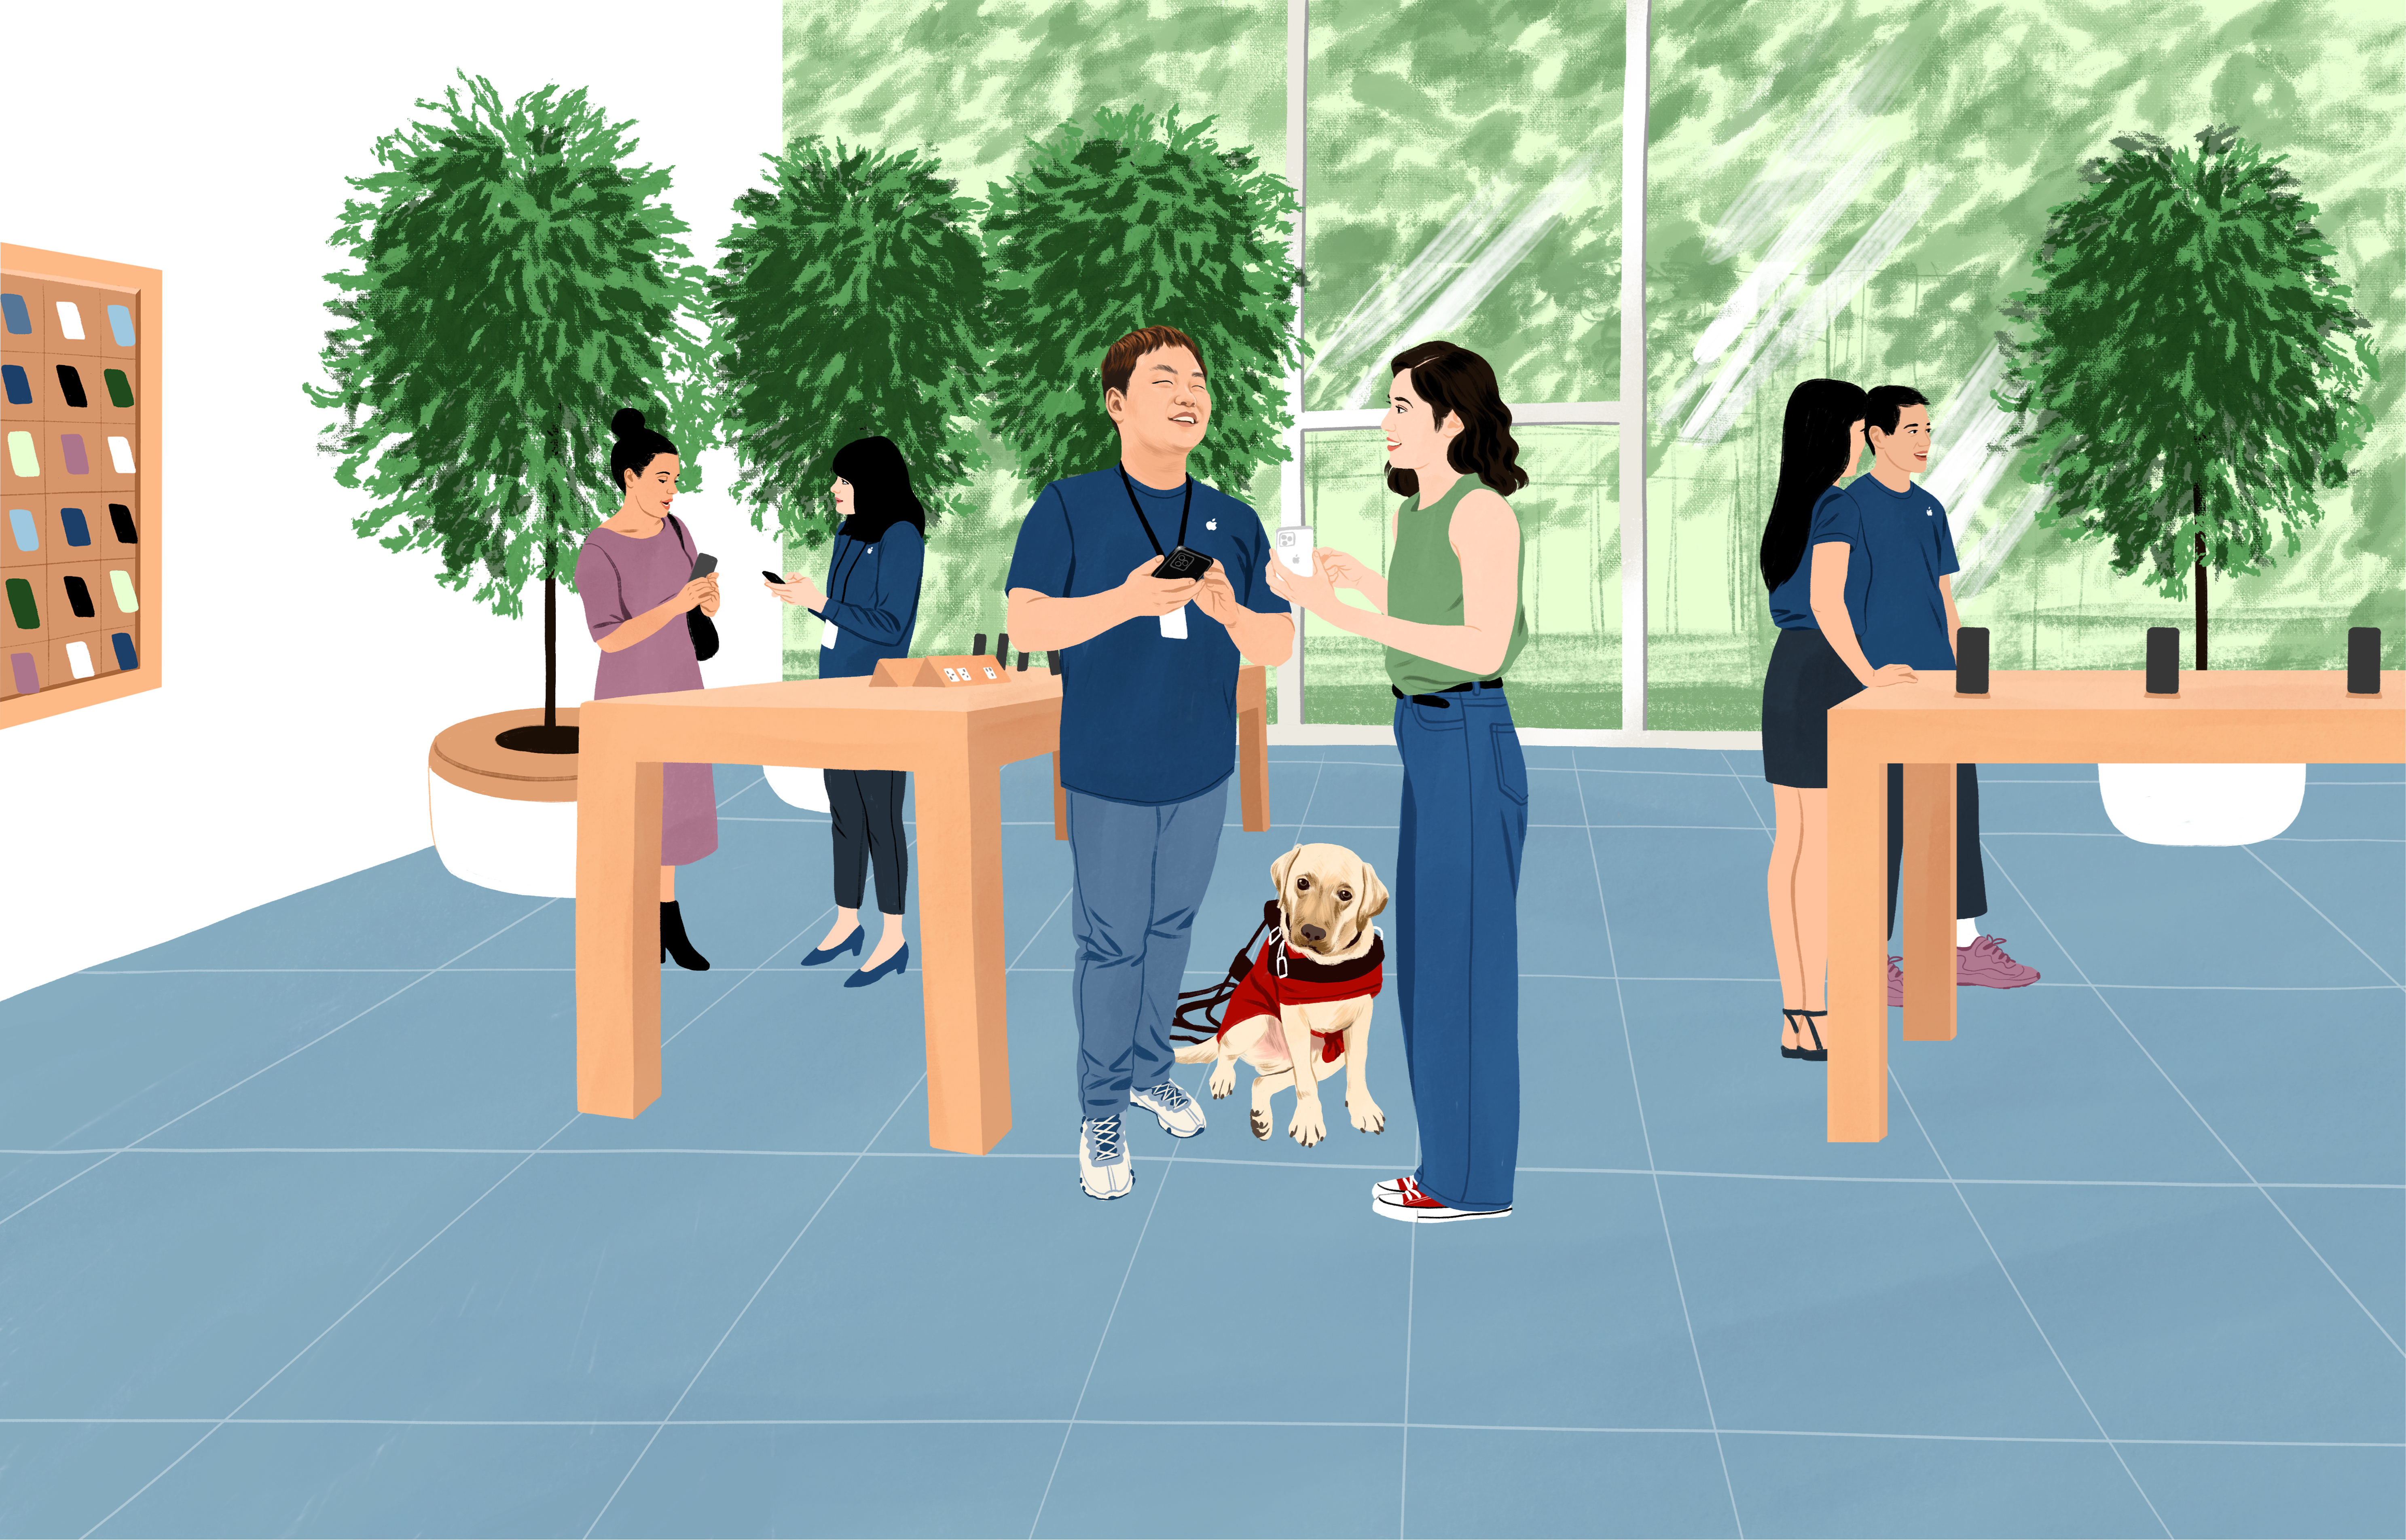 William ขณะทำงานที่ Apple Store มีสุนัขนำทางอยู่ข้างกาย ในมือถือ iPhone พลางตอบคำถามลูกค้า